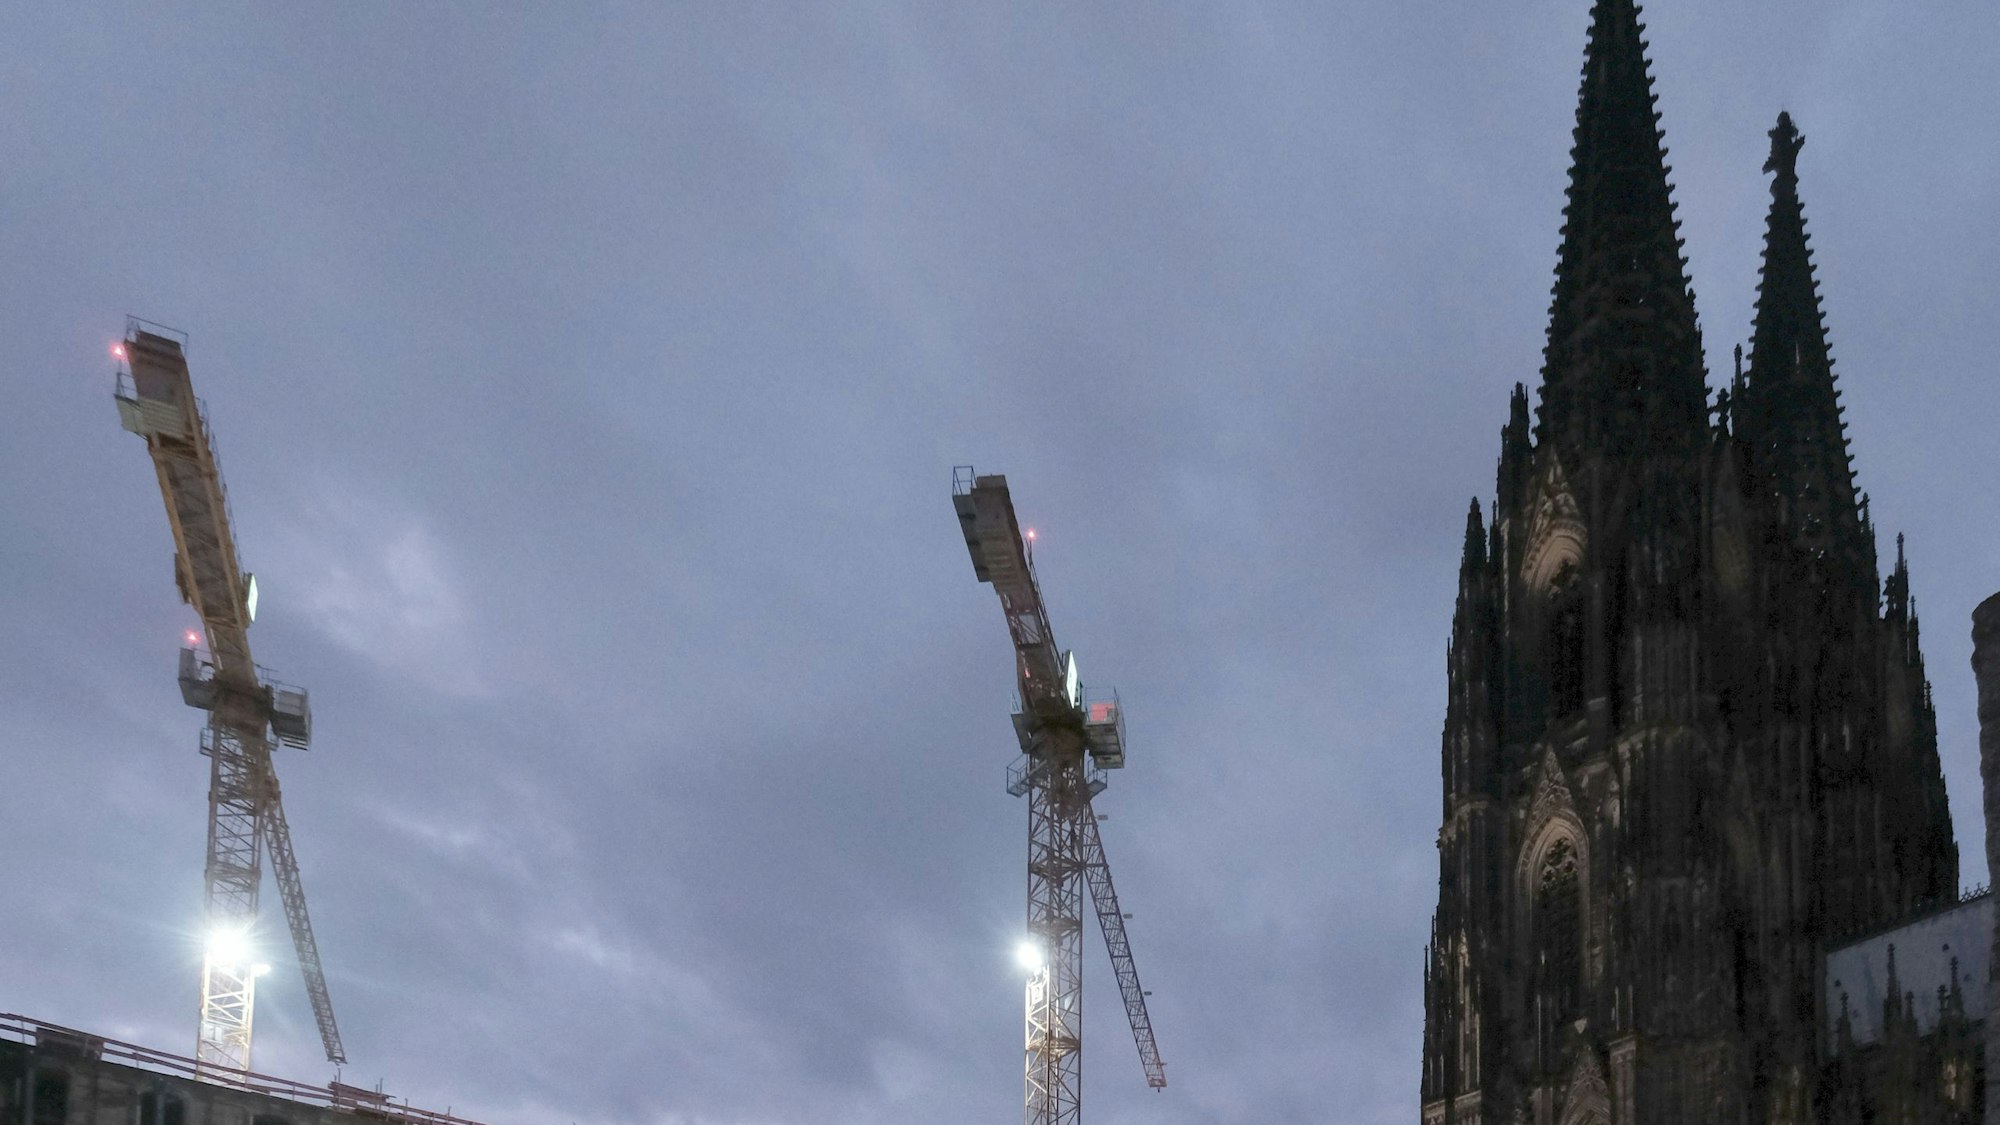 05.11.2021, Köln: Am Dom-Hotel werden die Stahlstützen abgebaut und die ursprüngliche historische Fassade wird wieder sichtbar. Foto: Max Grönert
